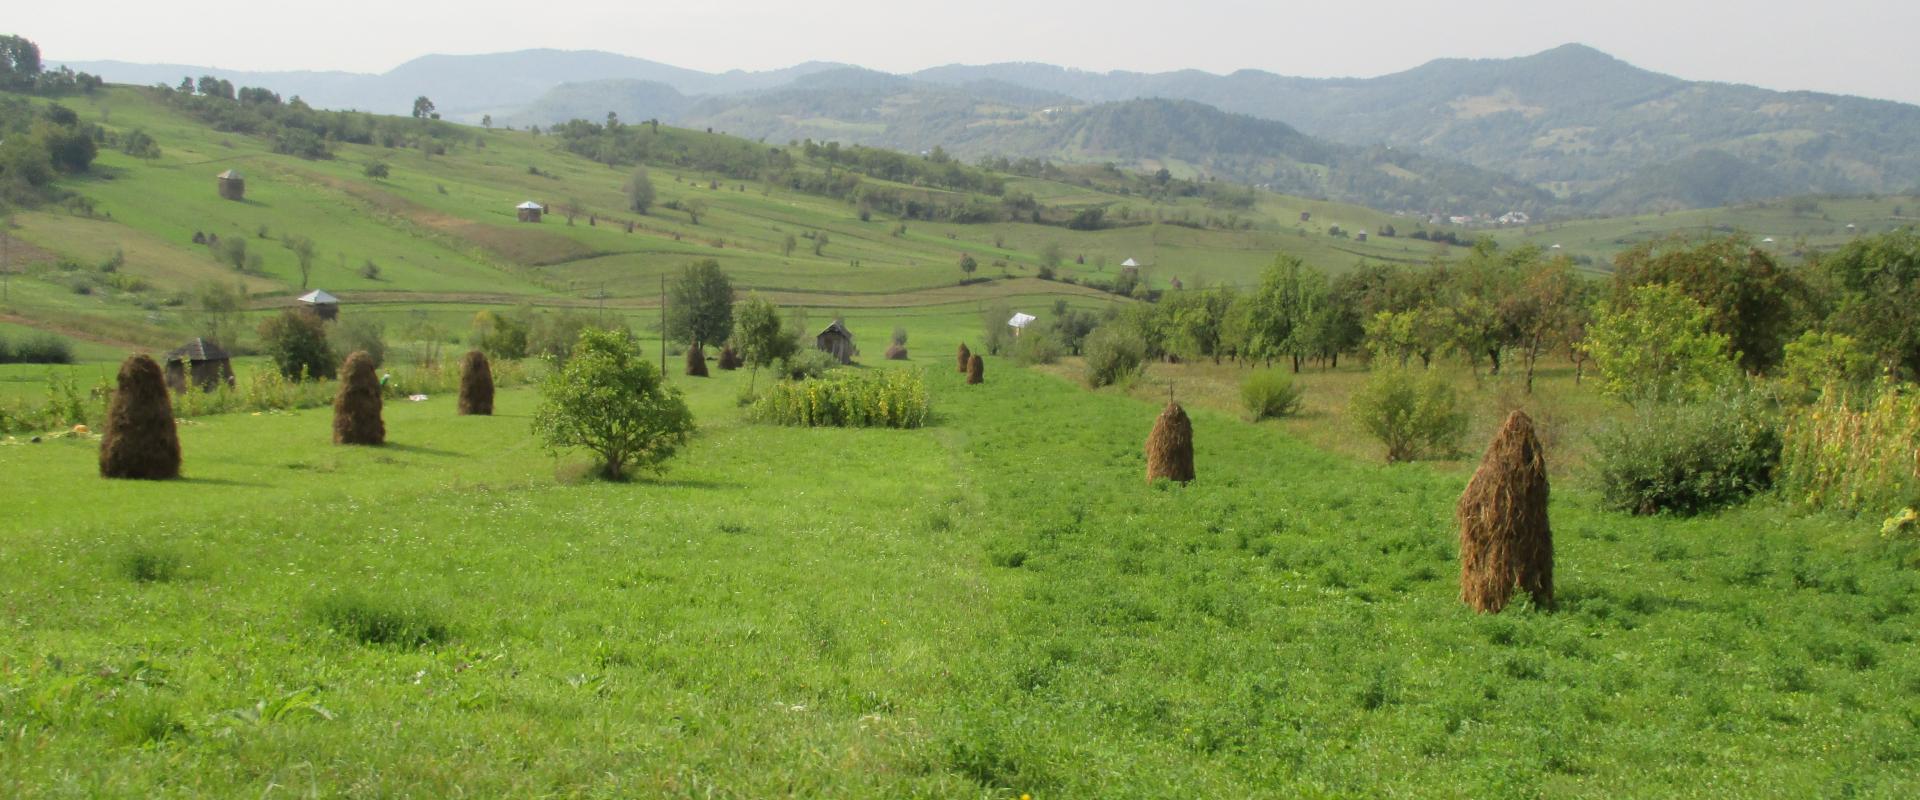 Rumänische Landschaft mit traditionellen Heuhaufen auf grünen Feldern, sanften Hügeln im Hintergrund und einem leichten Blick auf einen Motorradspiegel im Vordergrund.